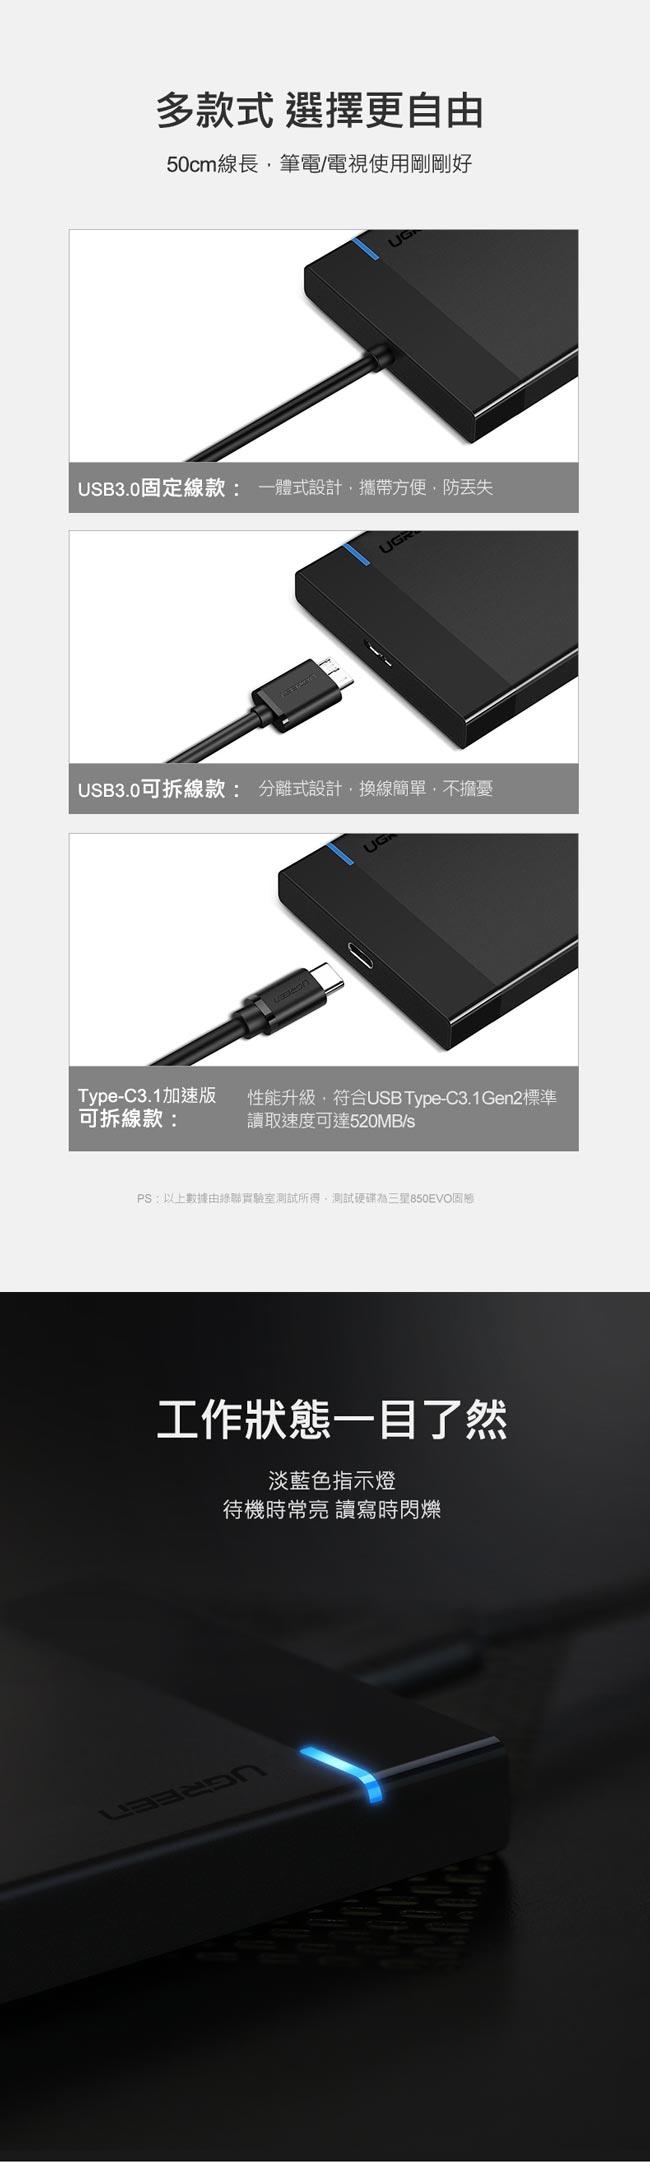 [加購]綠聯 50cm2.5吋USB3.0隨身硬碟外接盒 黑色 UASP版 50cm